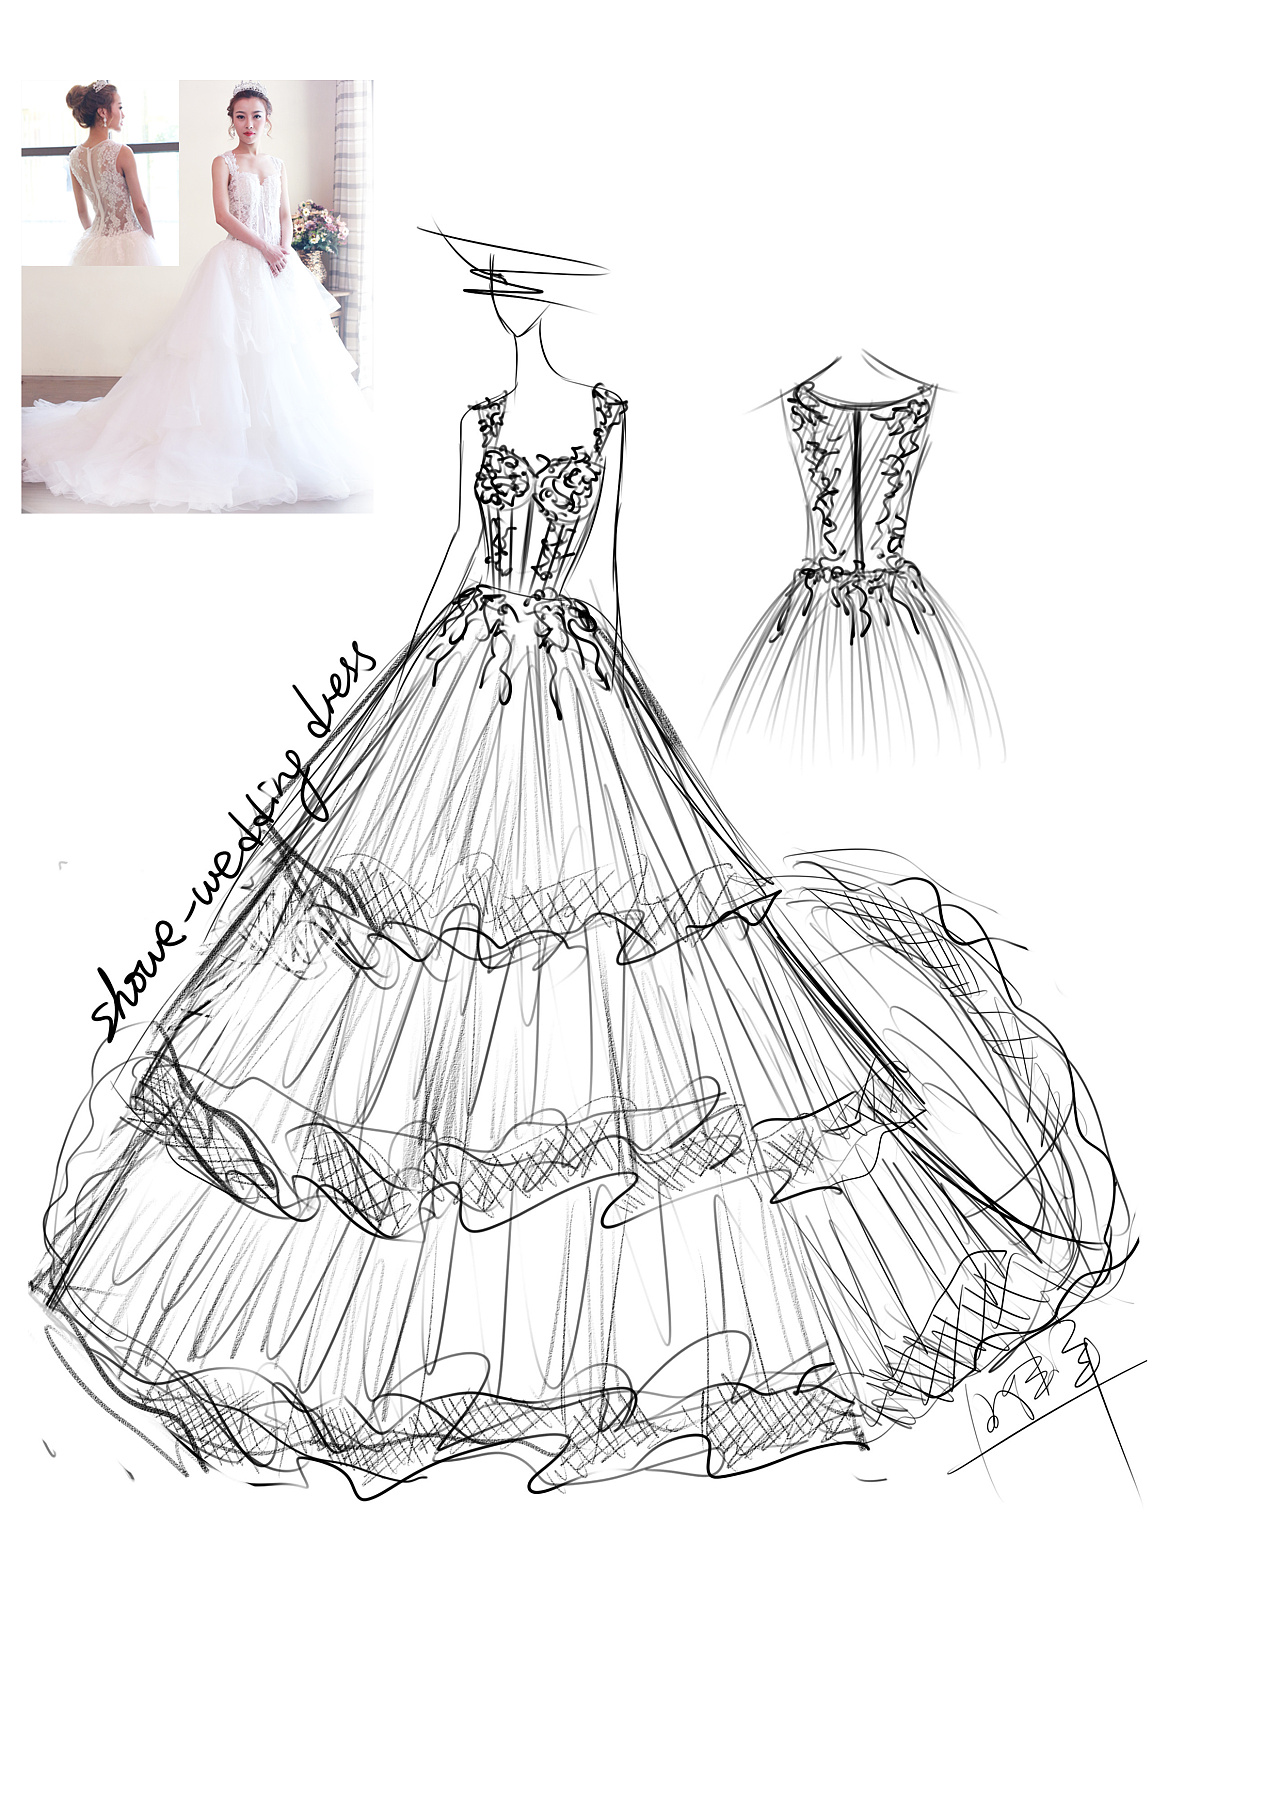 时装画-婚纱礼服设计-服装设计